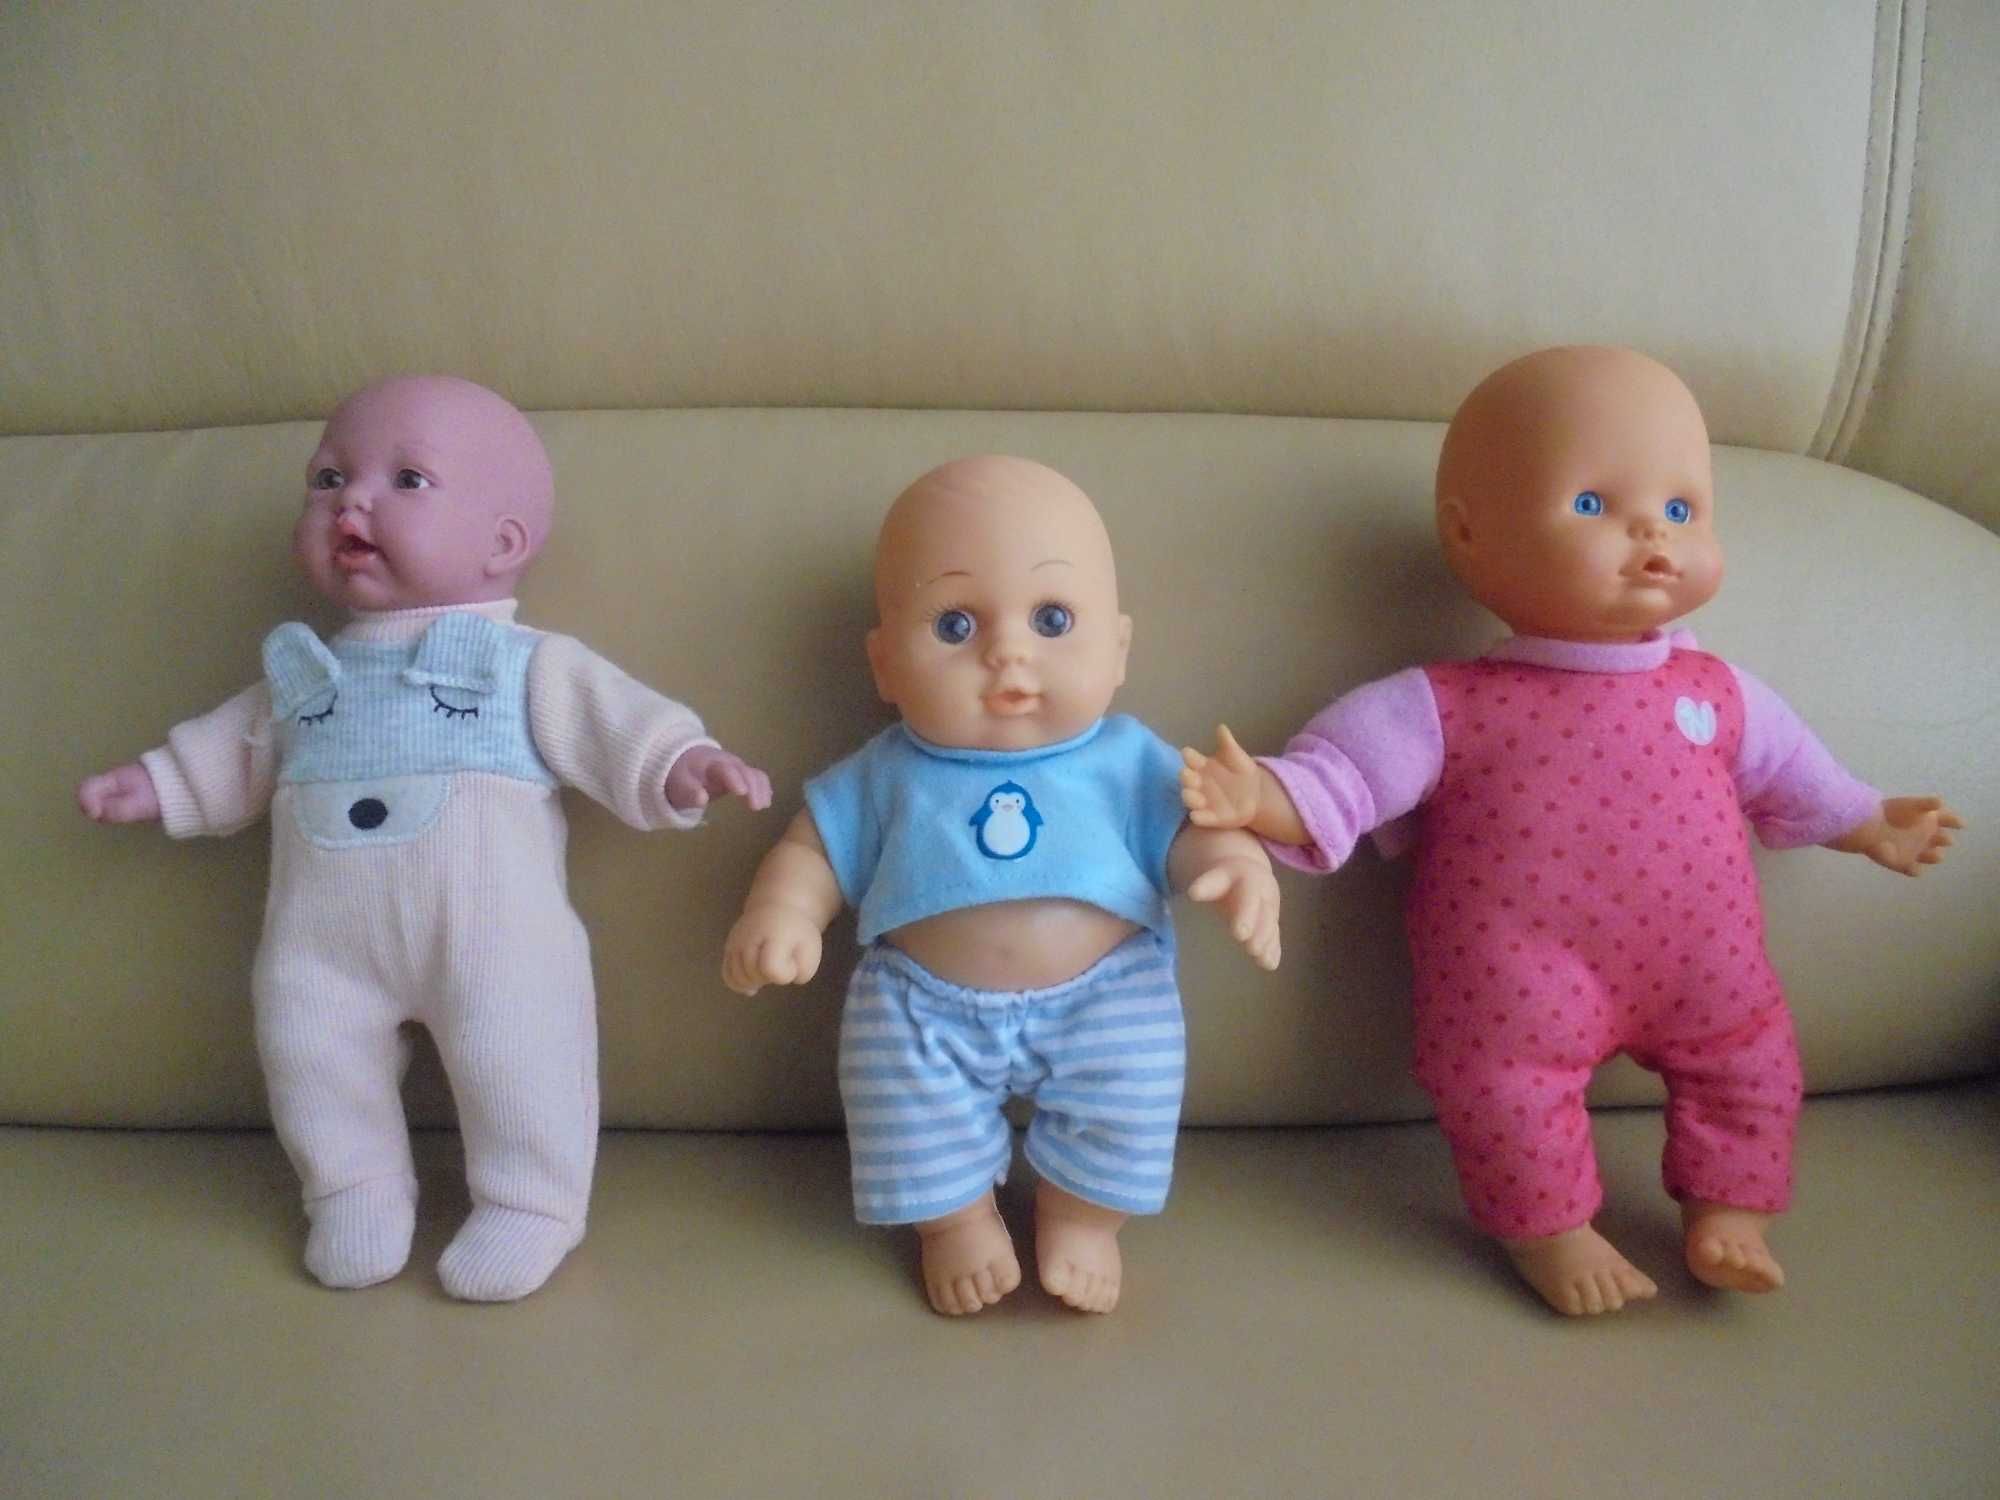 3 bonecas para menina brincar lindas